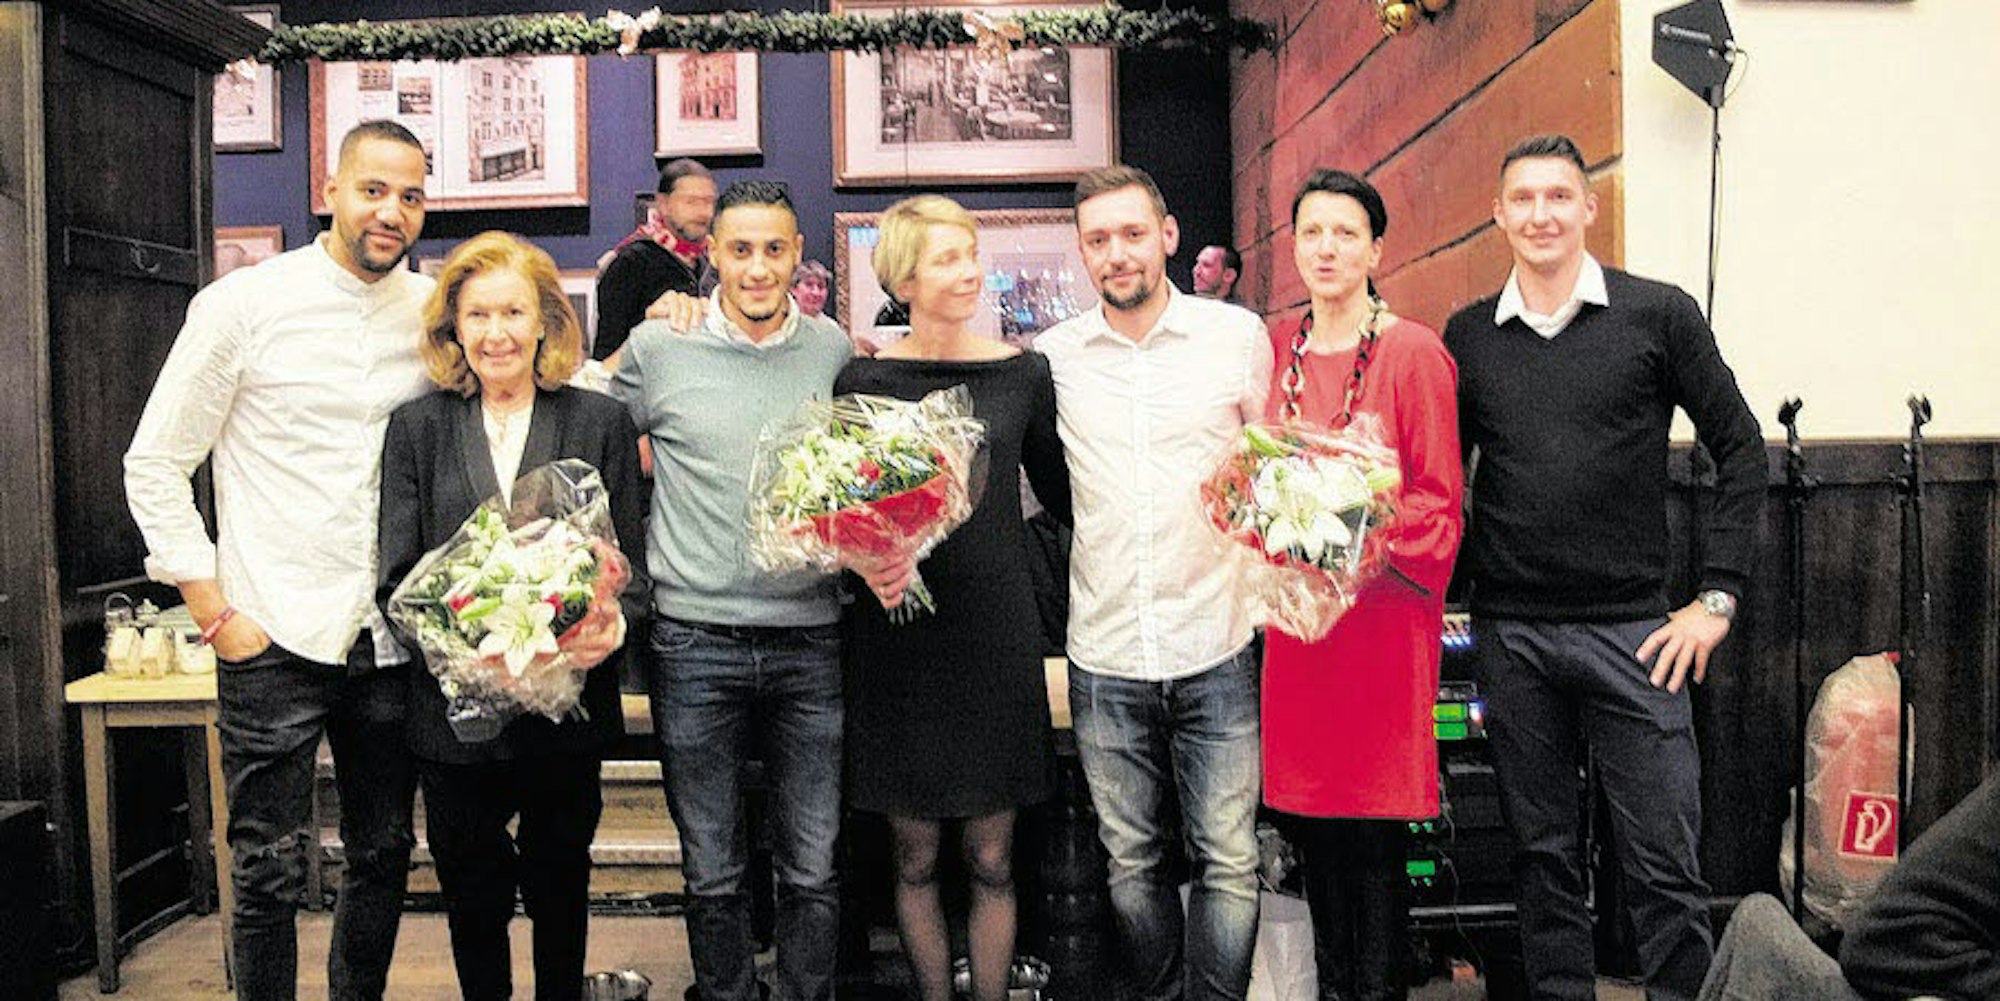 Blumen für Helge Ulonska (v.l.), Ulrike Schwetje, Alexandra Winn und für alle Partnerinnen gab es bei der Fortuna-Feier von der Profimannschaft.